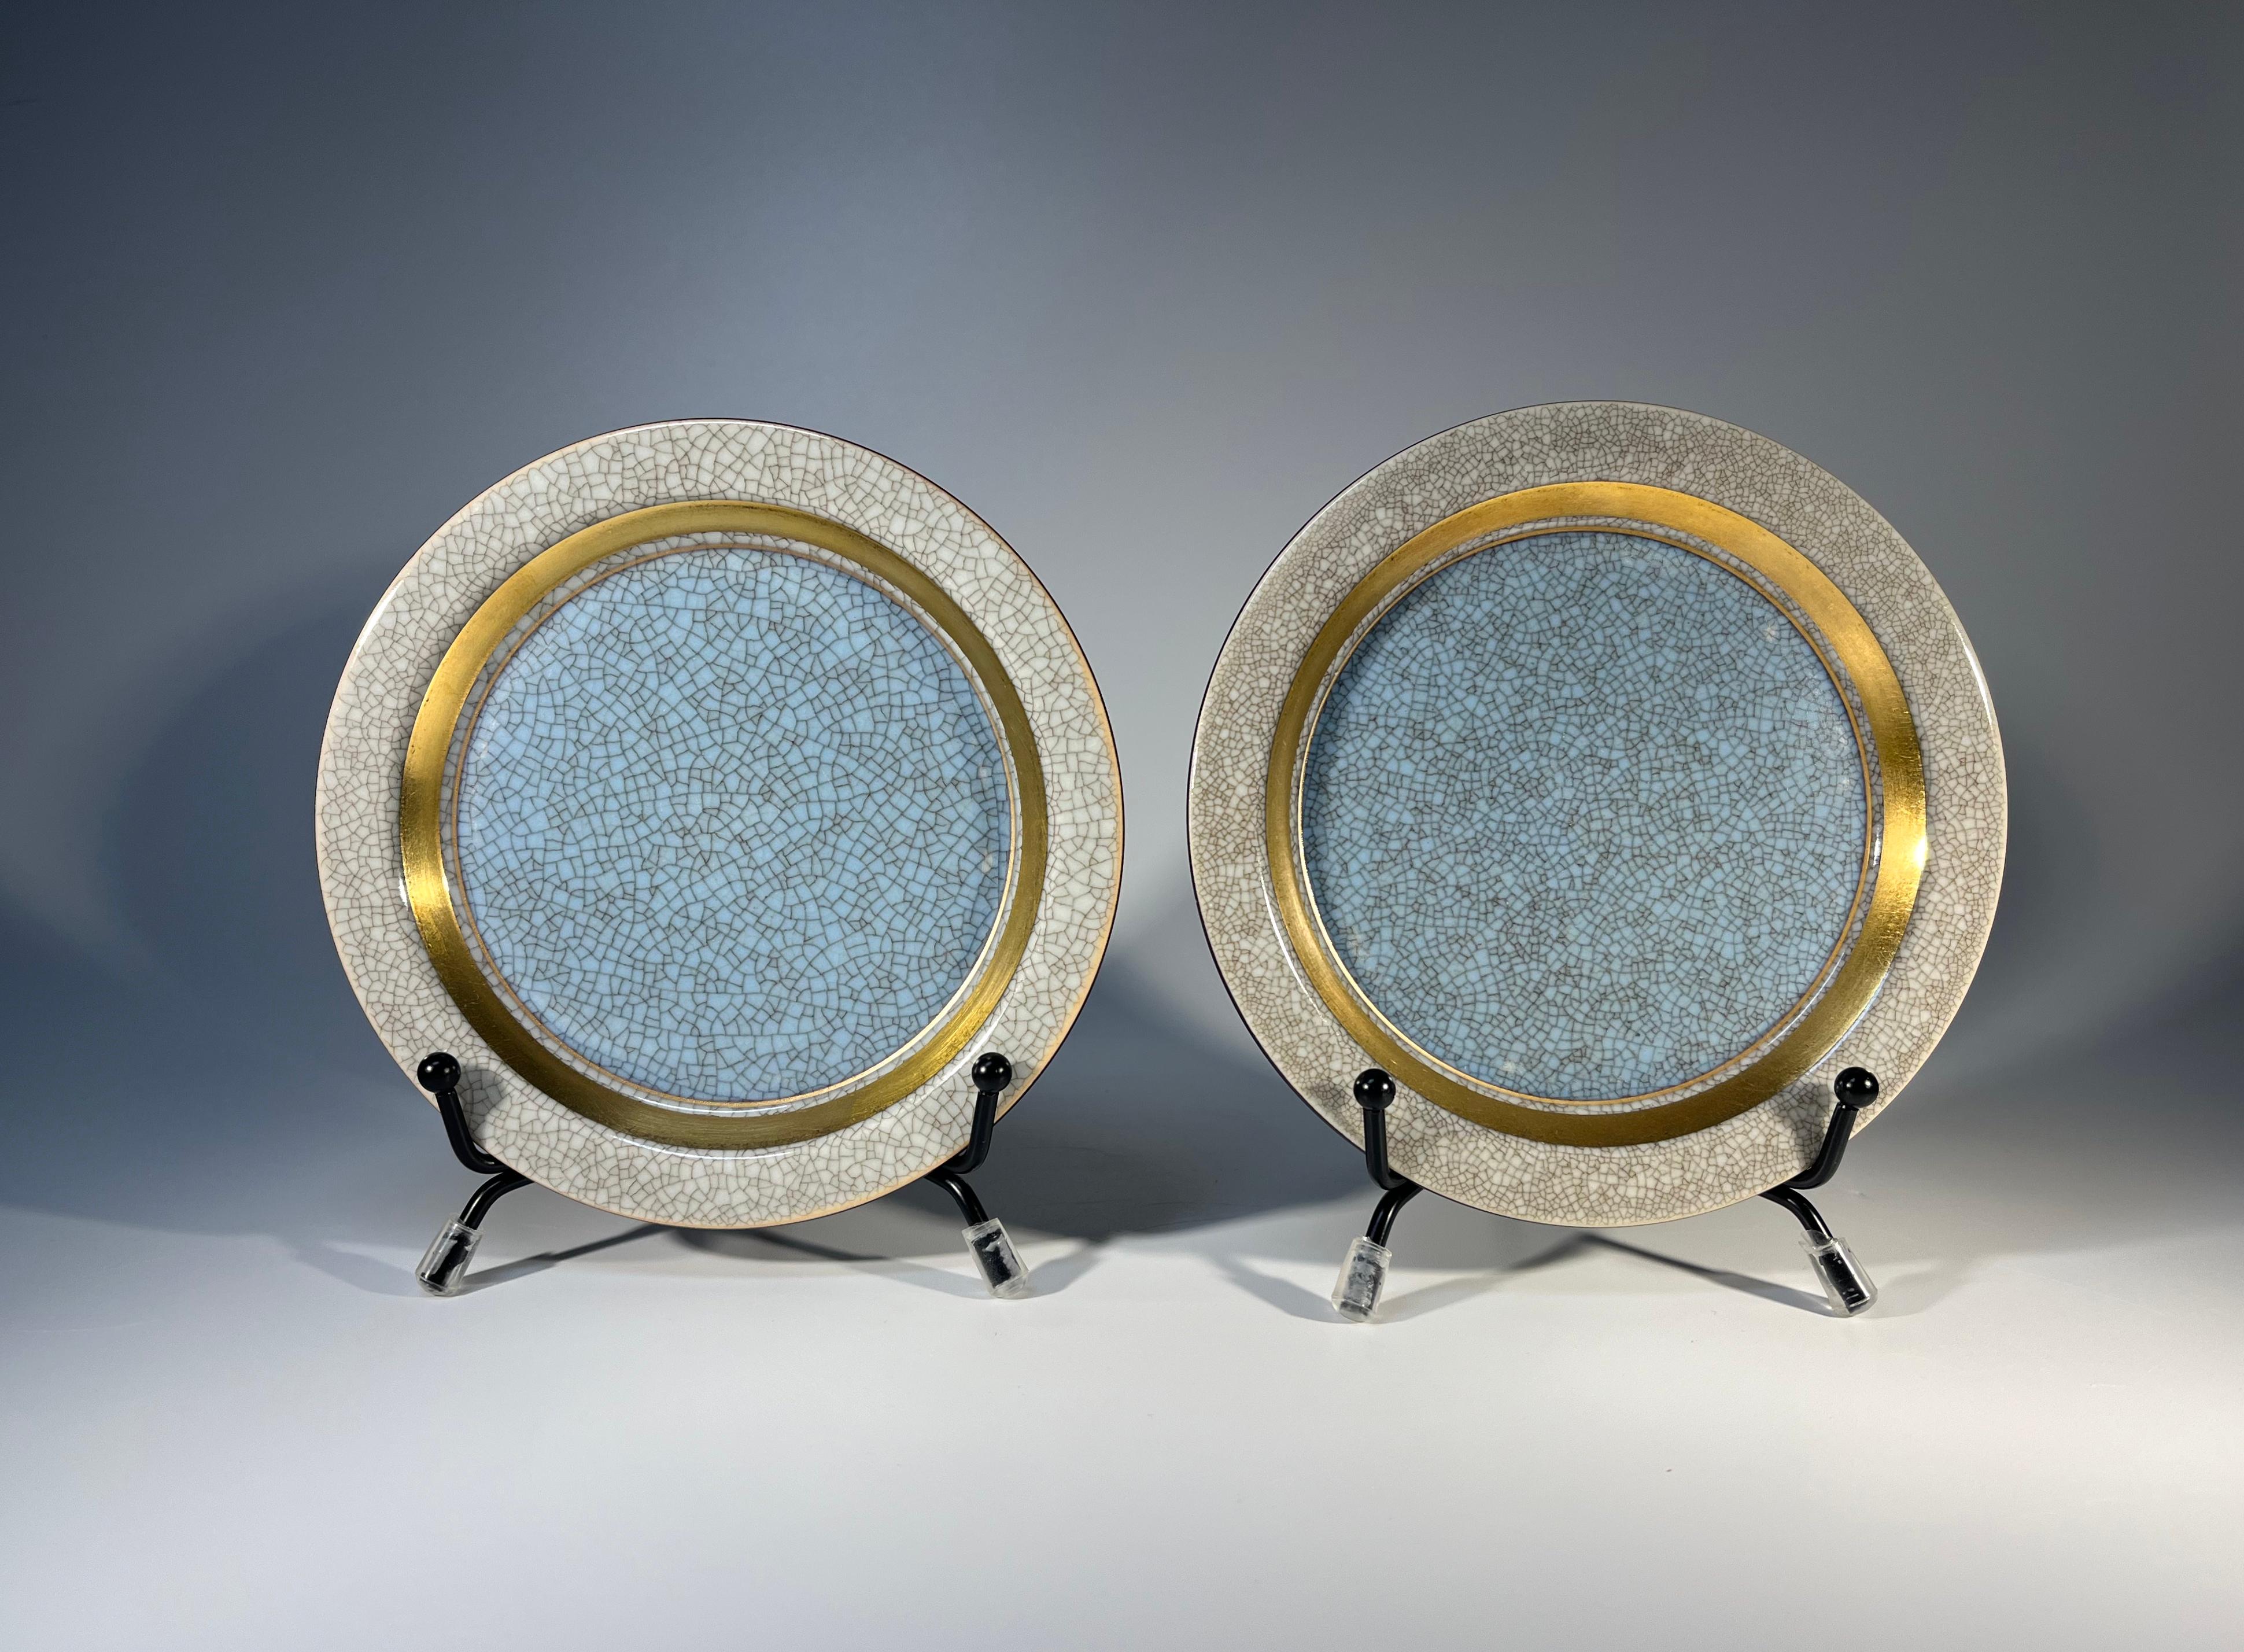 Ein schönes Paar Thorkild Olsen Pulver blau und vergoldet Porzellan Royal Copenhagen Crackle Pin Tabletts.
Graue Craquelé-Glasur auf Außenrand und Rückseite
Beide haben den gleichen Jahresstempel
CIRCA 1963
Signiert und nummeriert 3010
Höhe 0,5